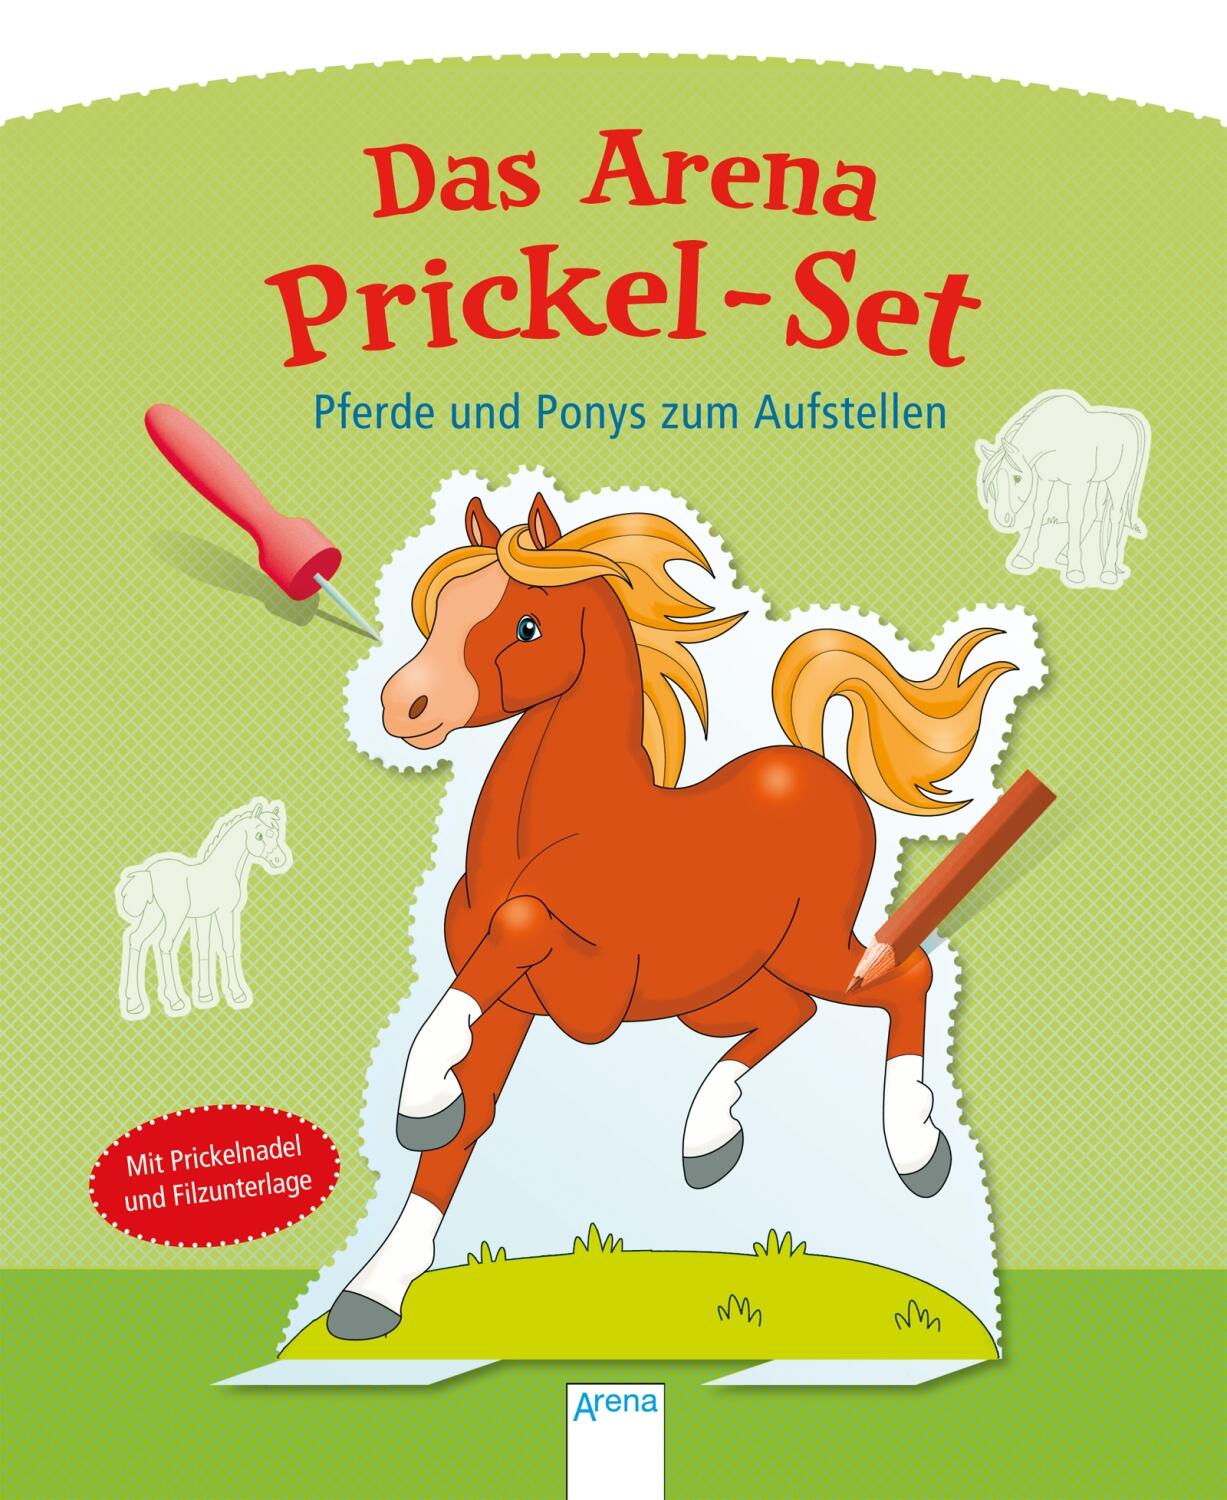 Das Arena Prickel-Set. Pferde und Ponys zum Aufstellen